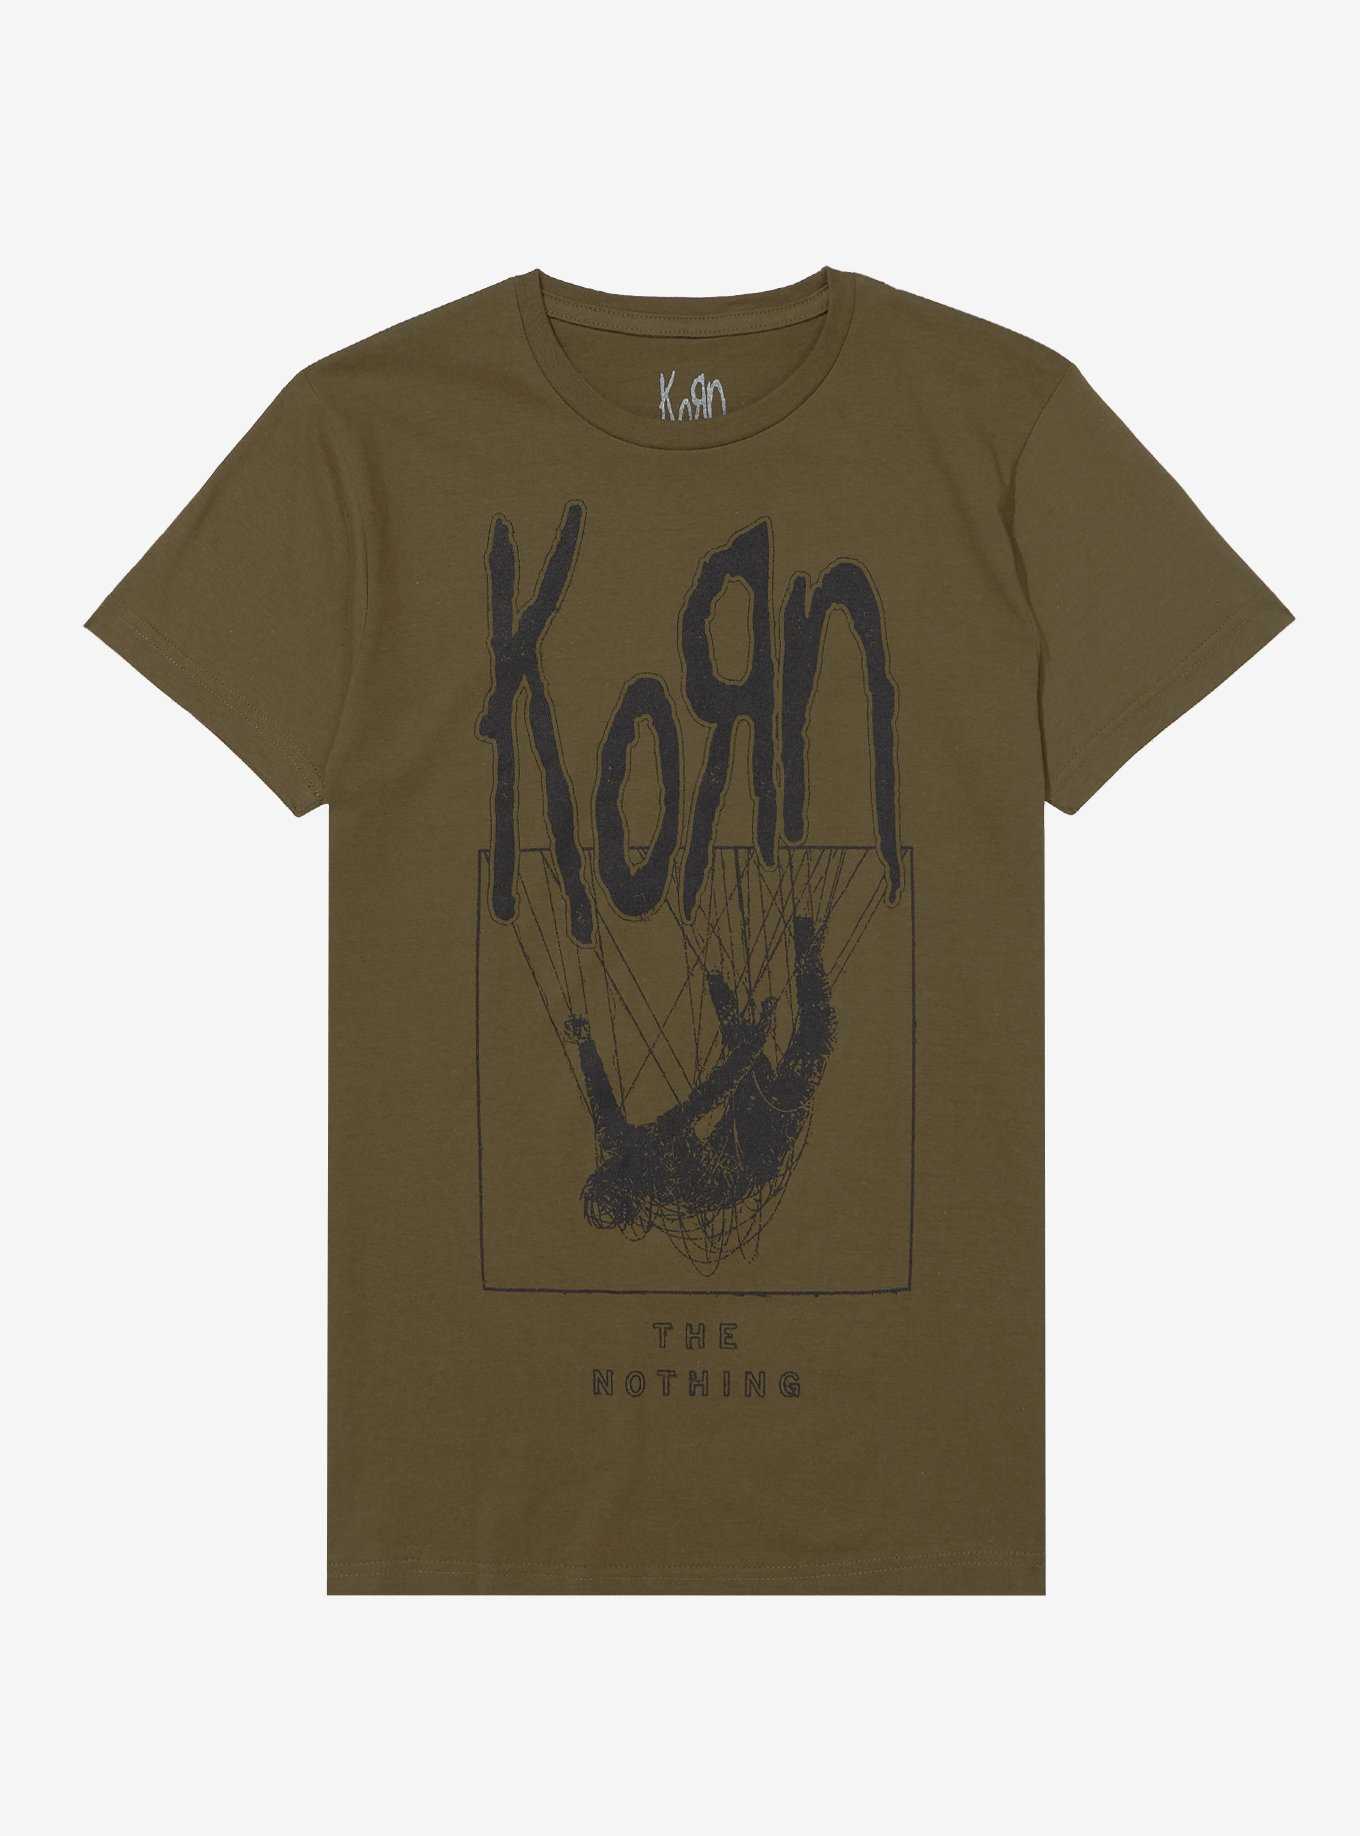 OFFICIAL Korn Shirts & Merch